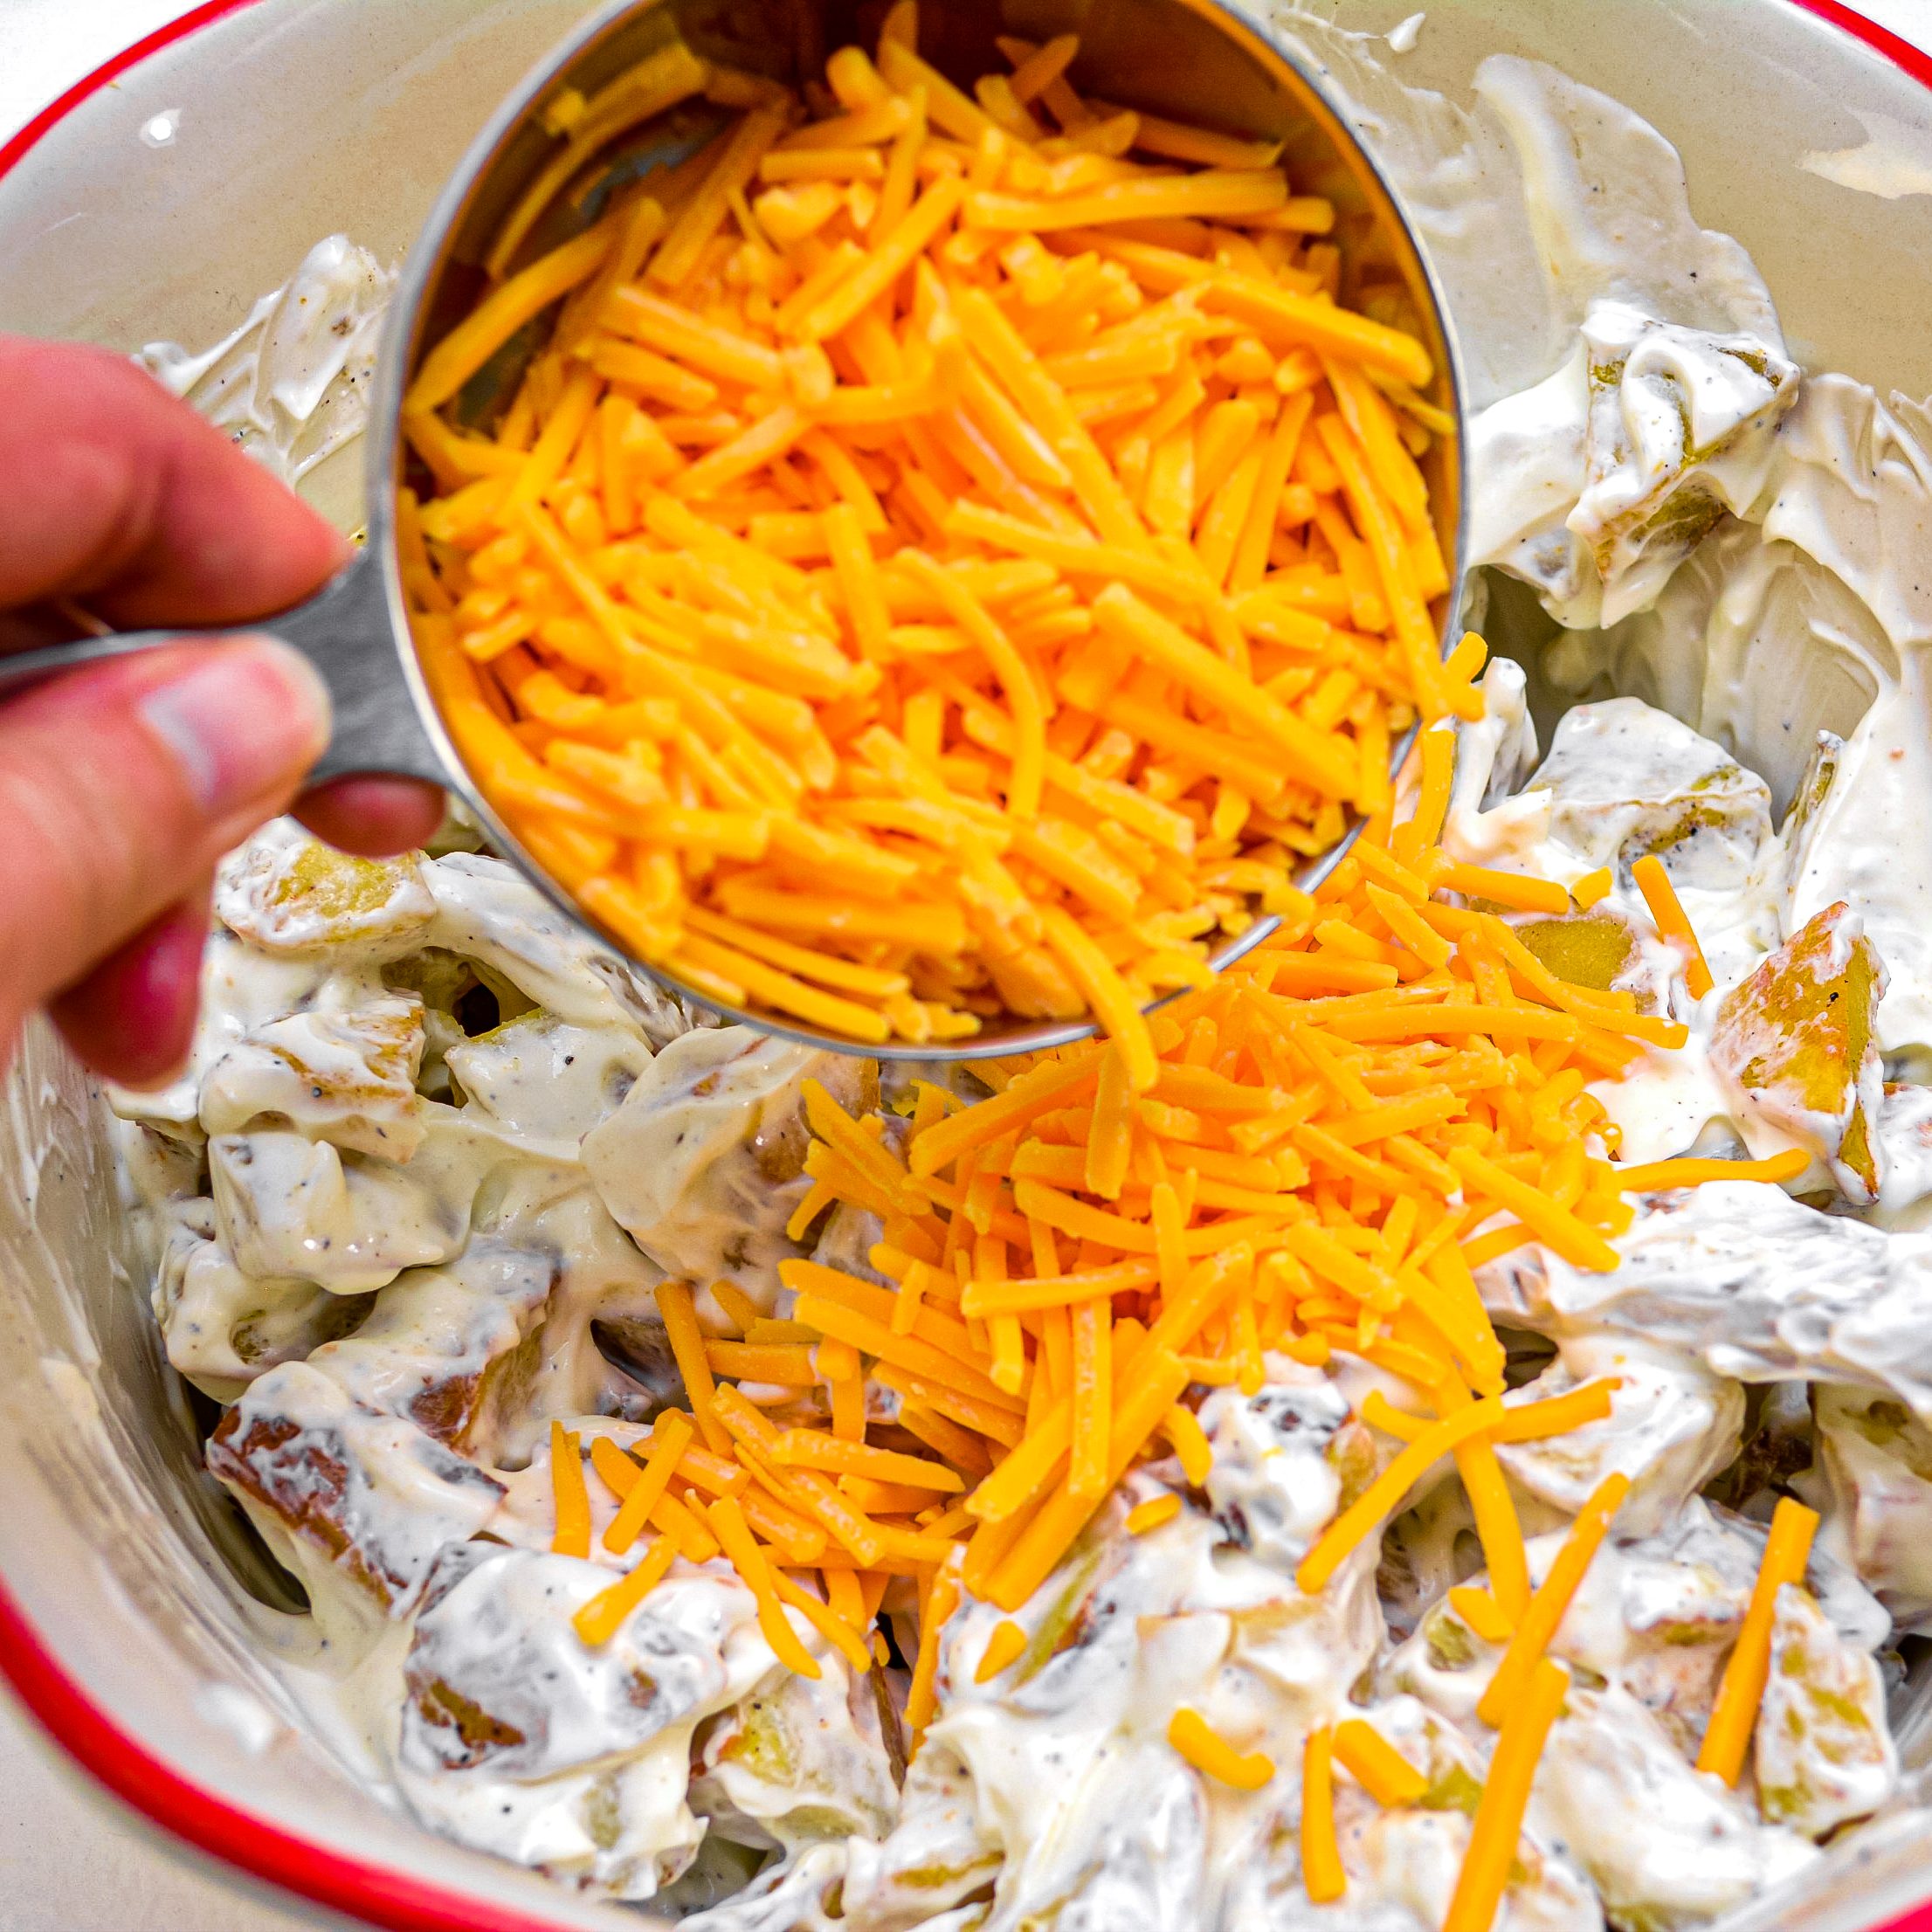 Add in 2 cups of shredded cheddar cheese.